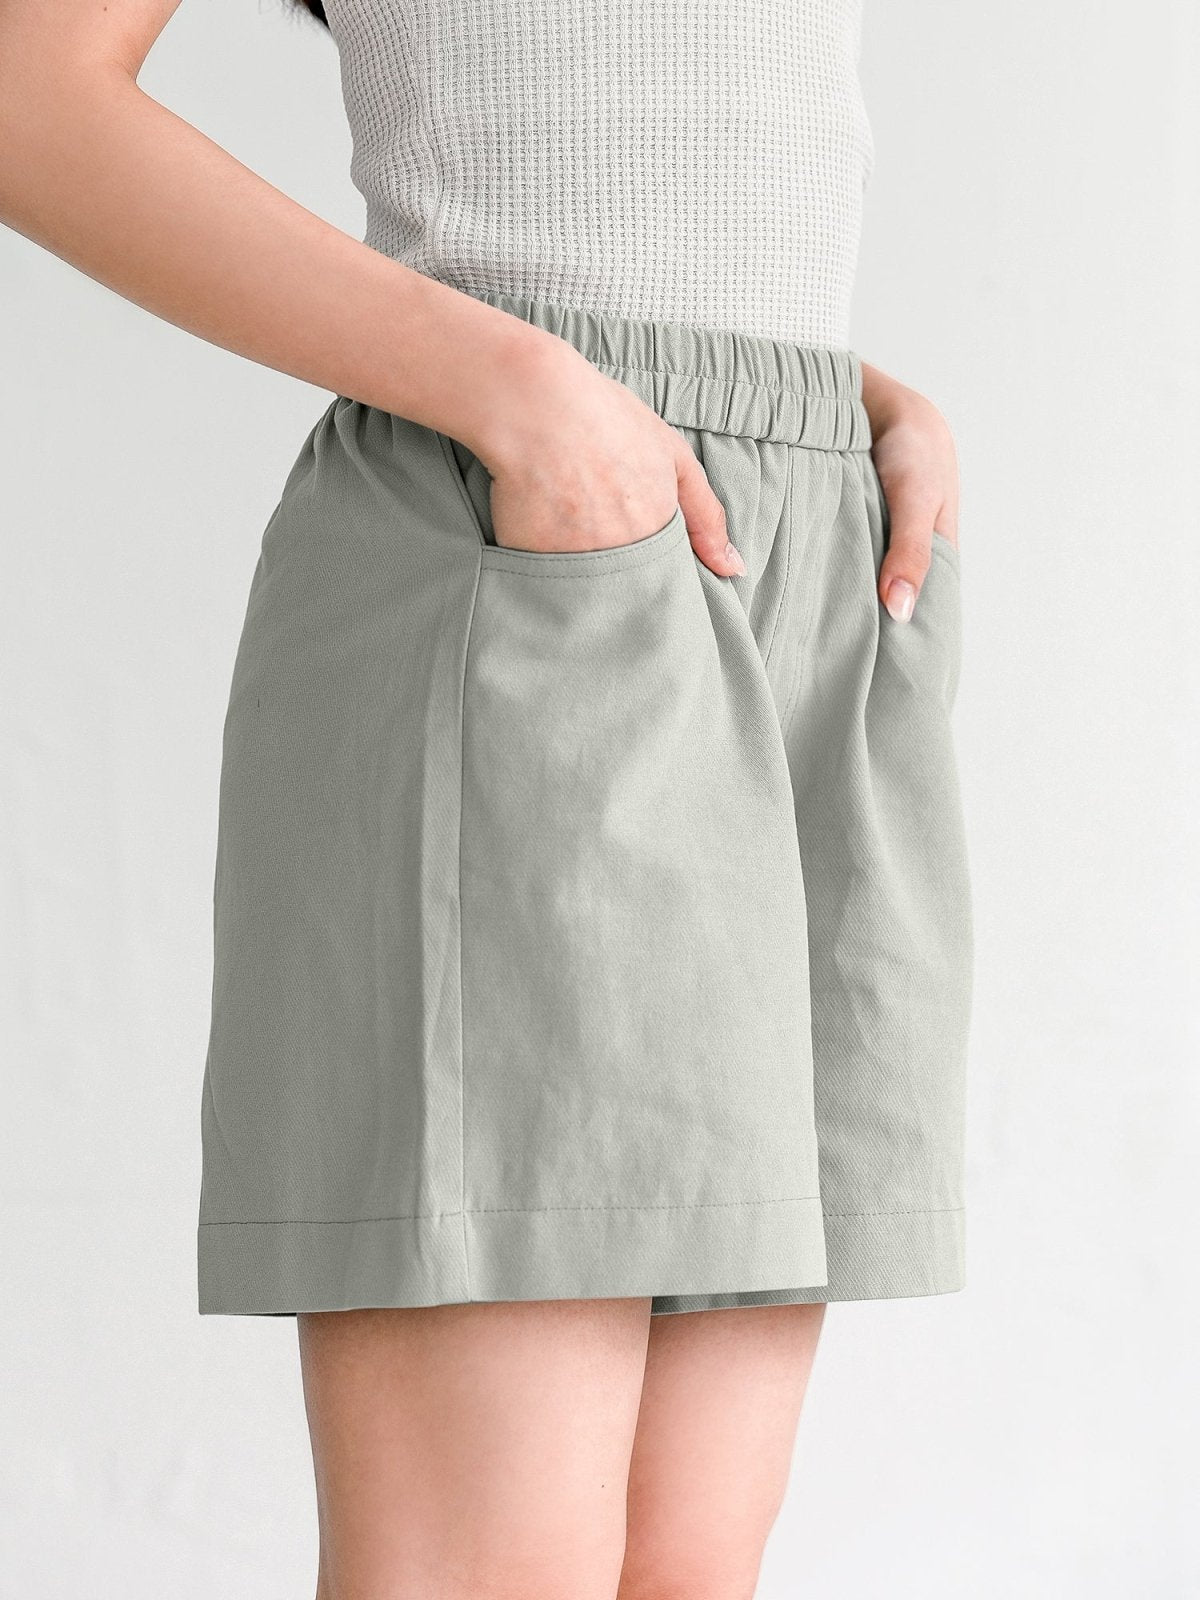 Hannah Elastic Cotton Shorts - DAG-G-220174GreyF - Stone Blue - F - D'ZAGE Designs